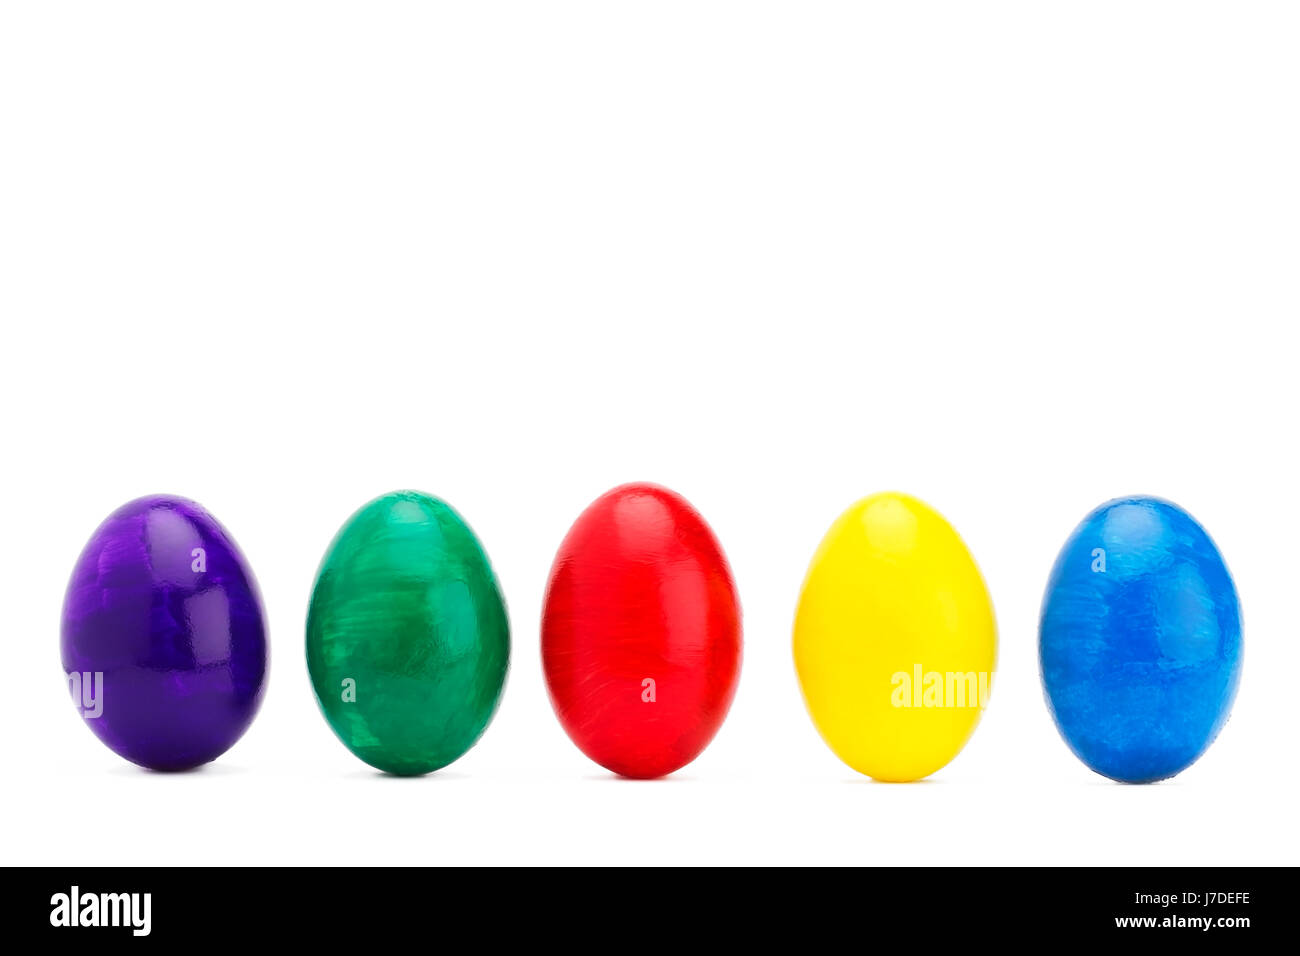 Série avec des œufs de Pâques colorés Banque D'Images